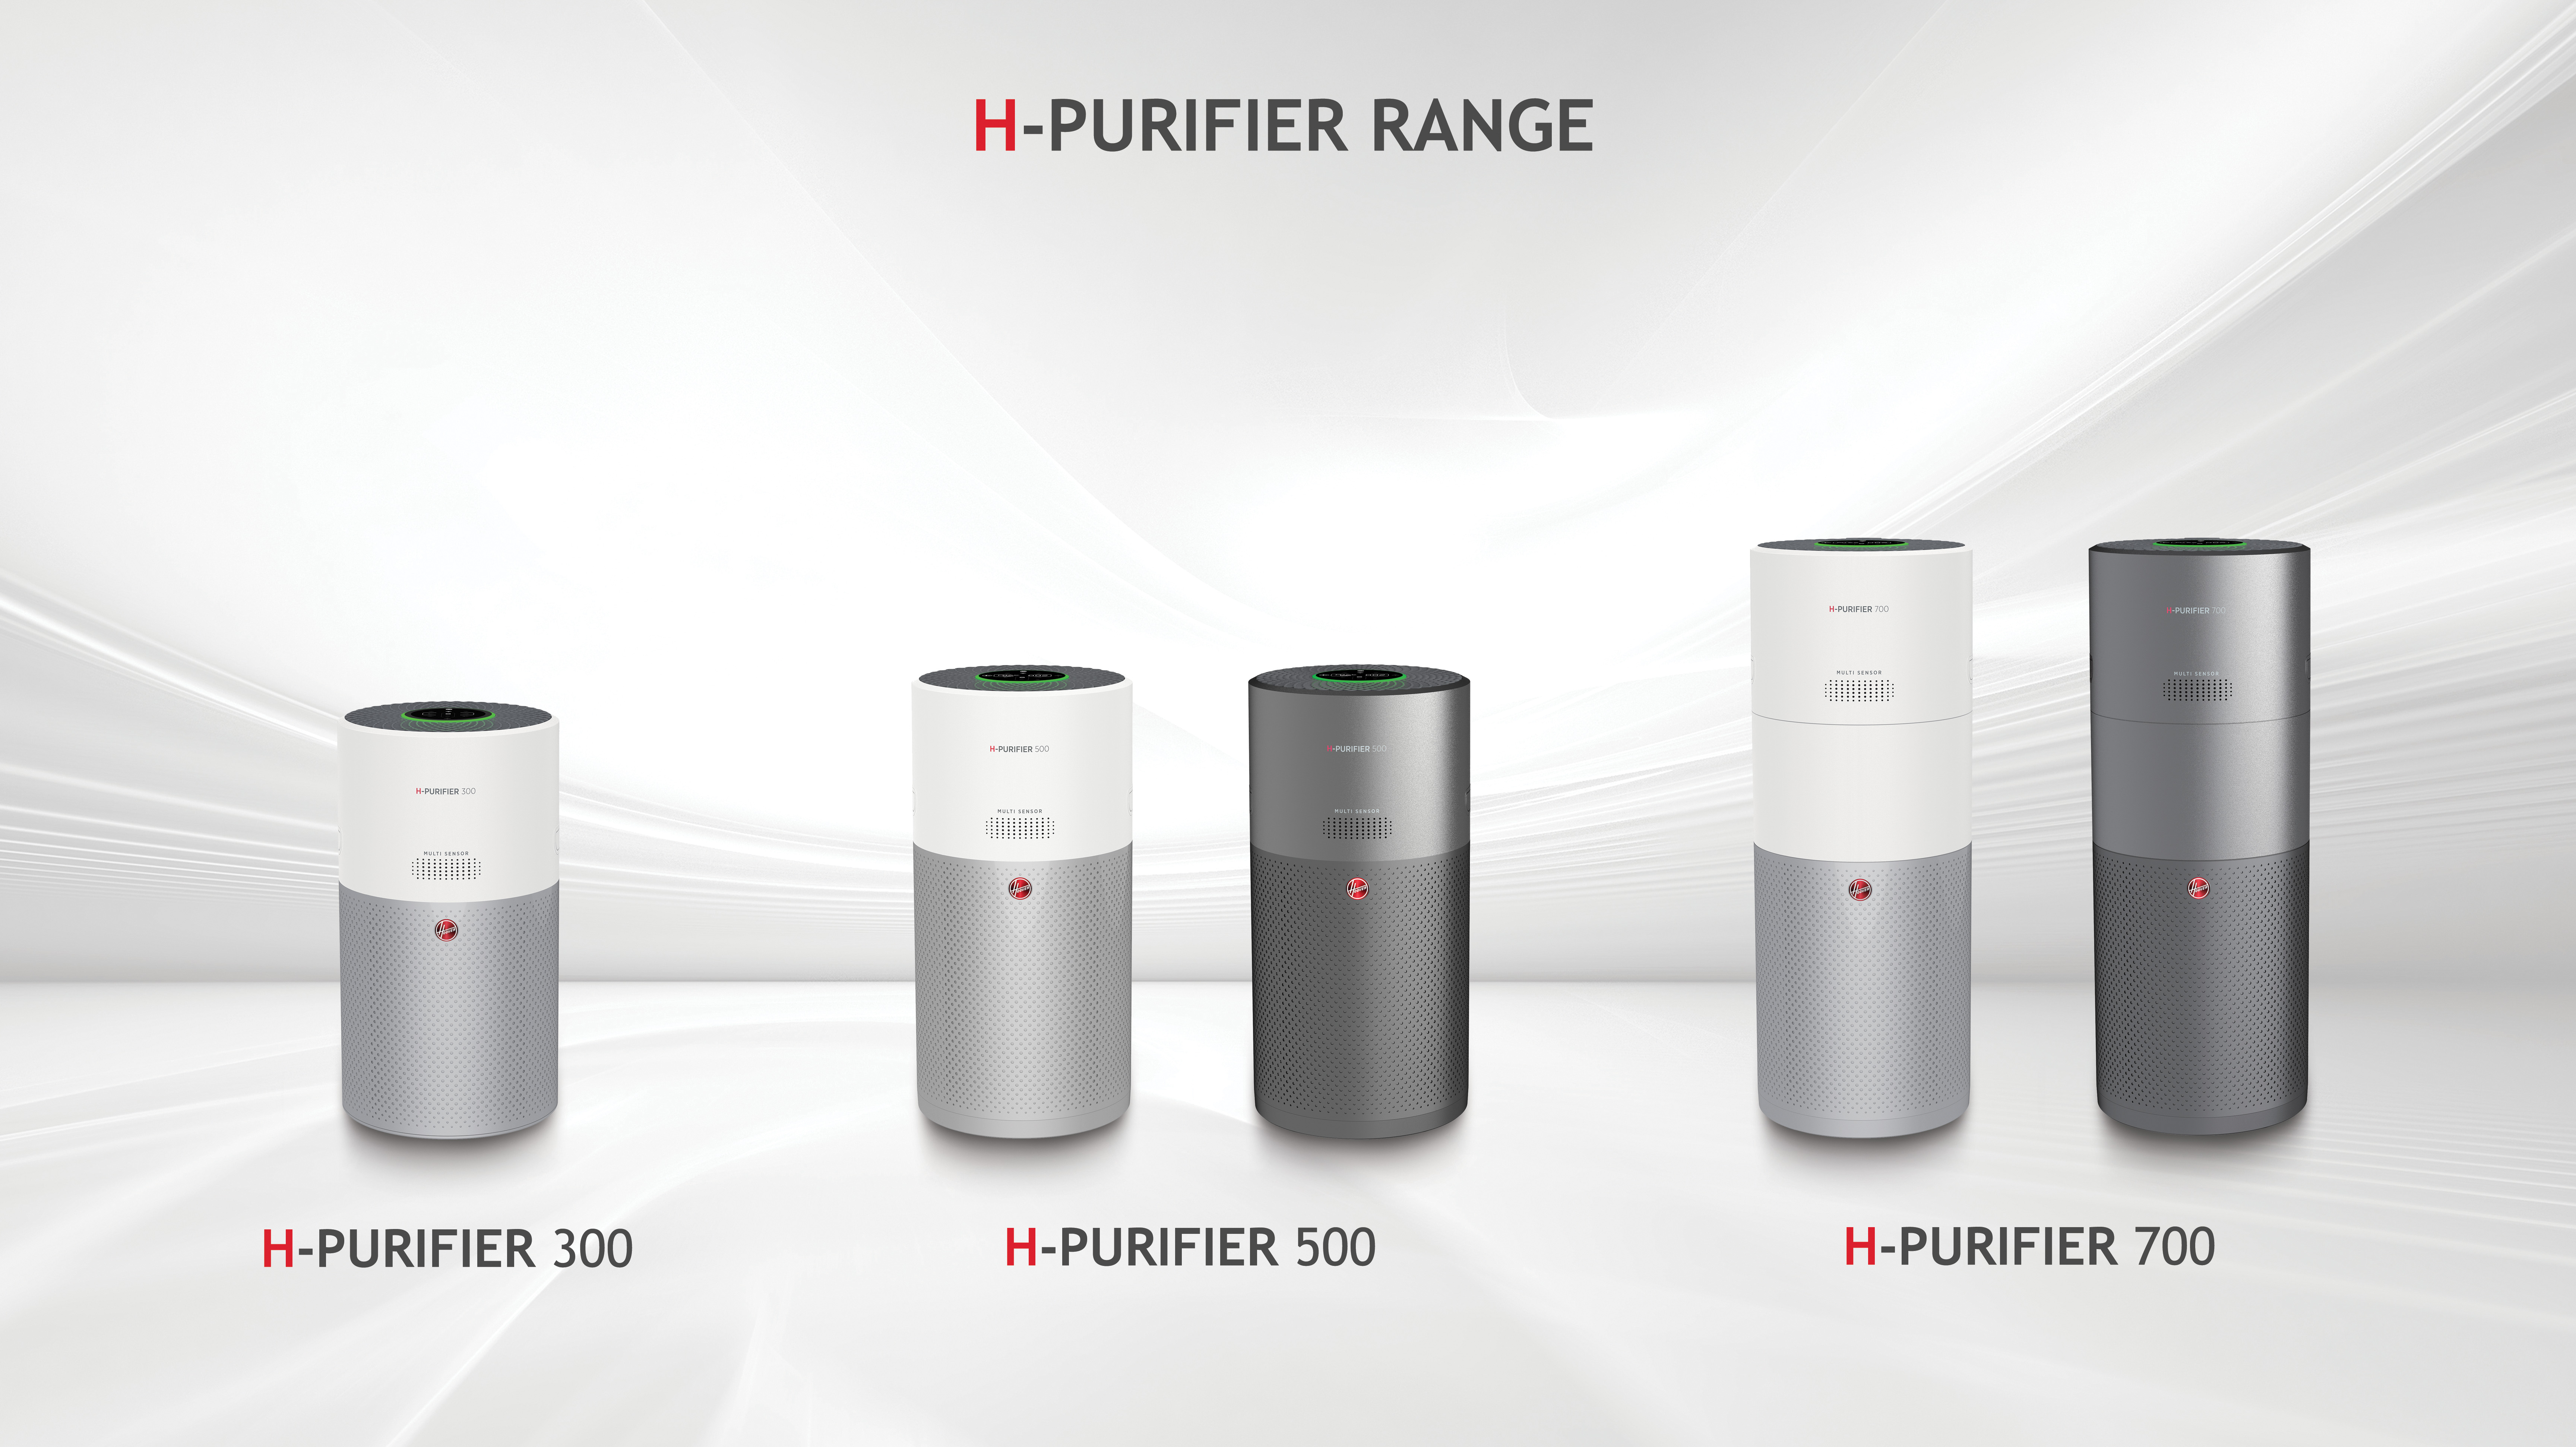 Hoover lanza H-PURIFIER, su primera gama de purificadores de aire